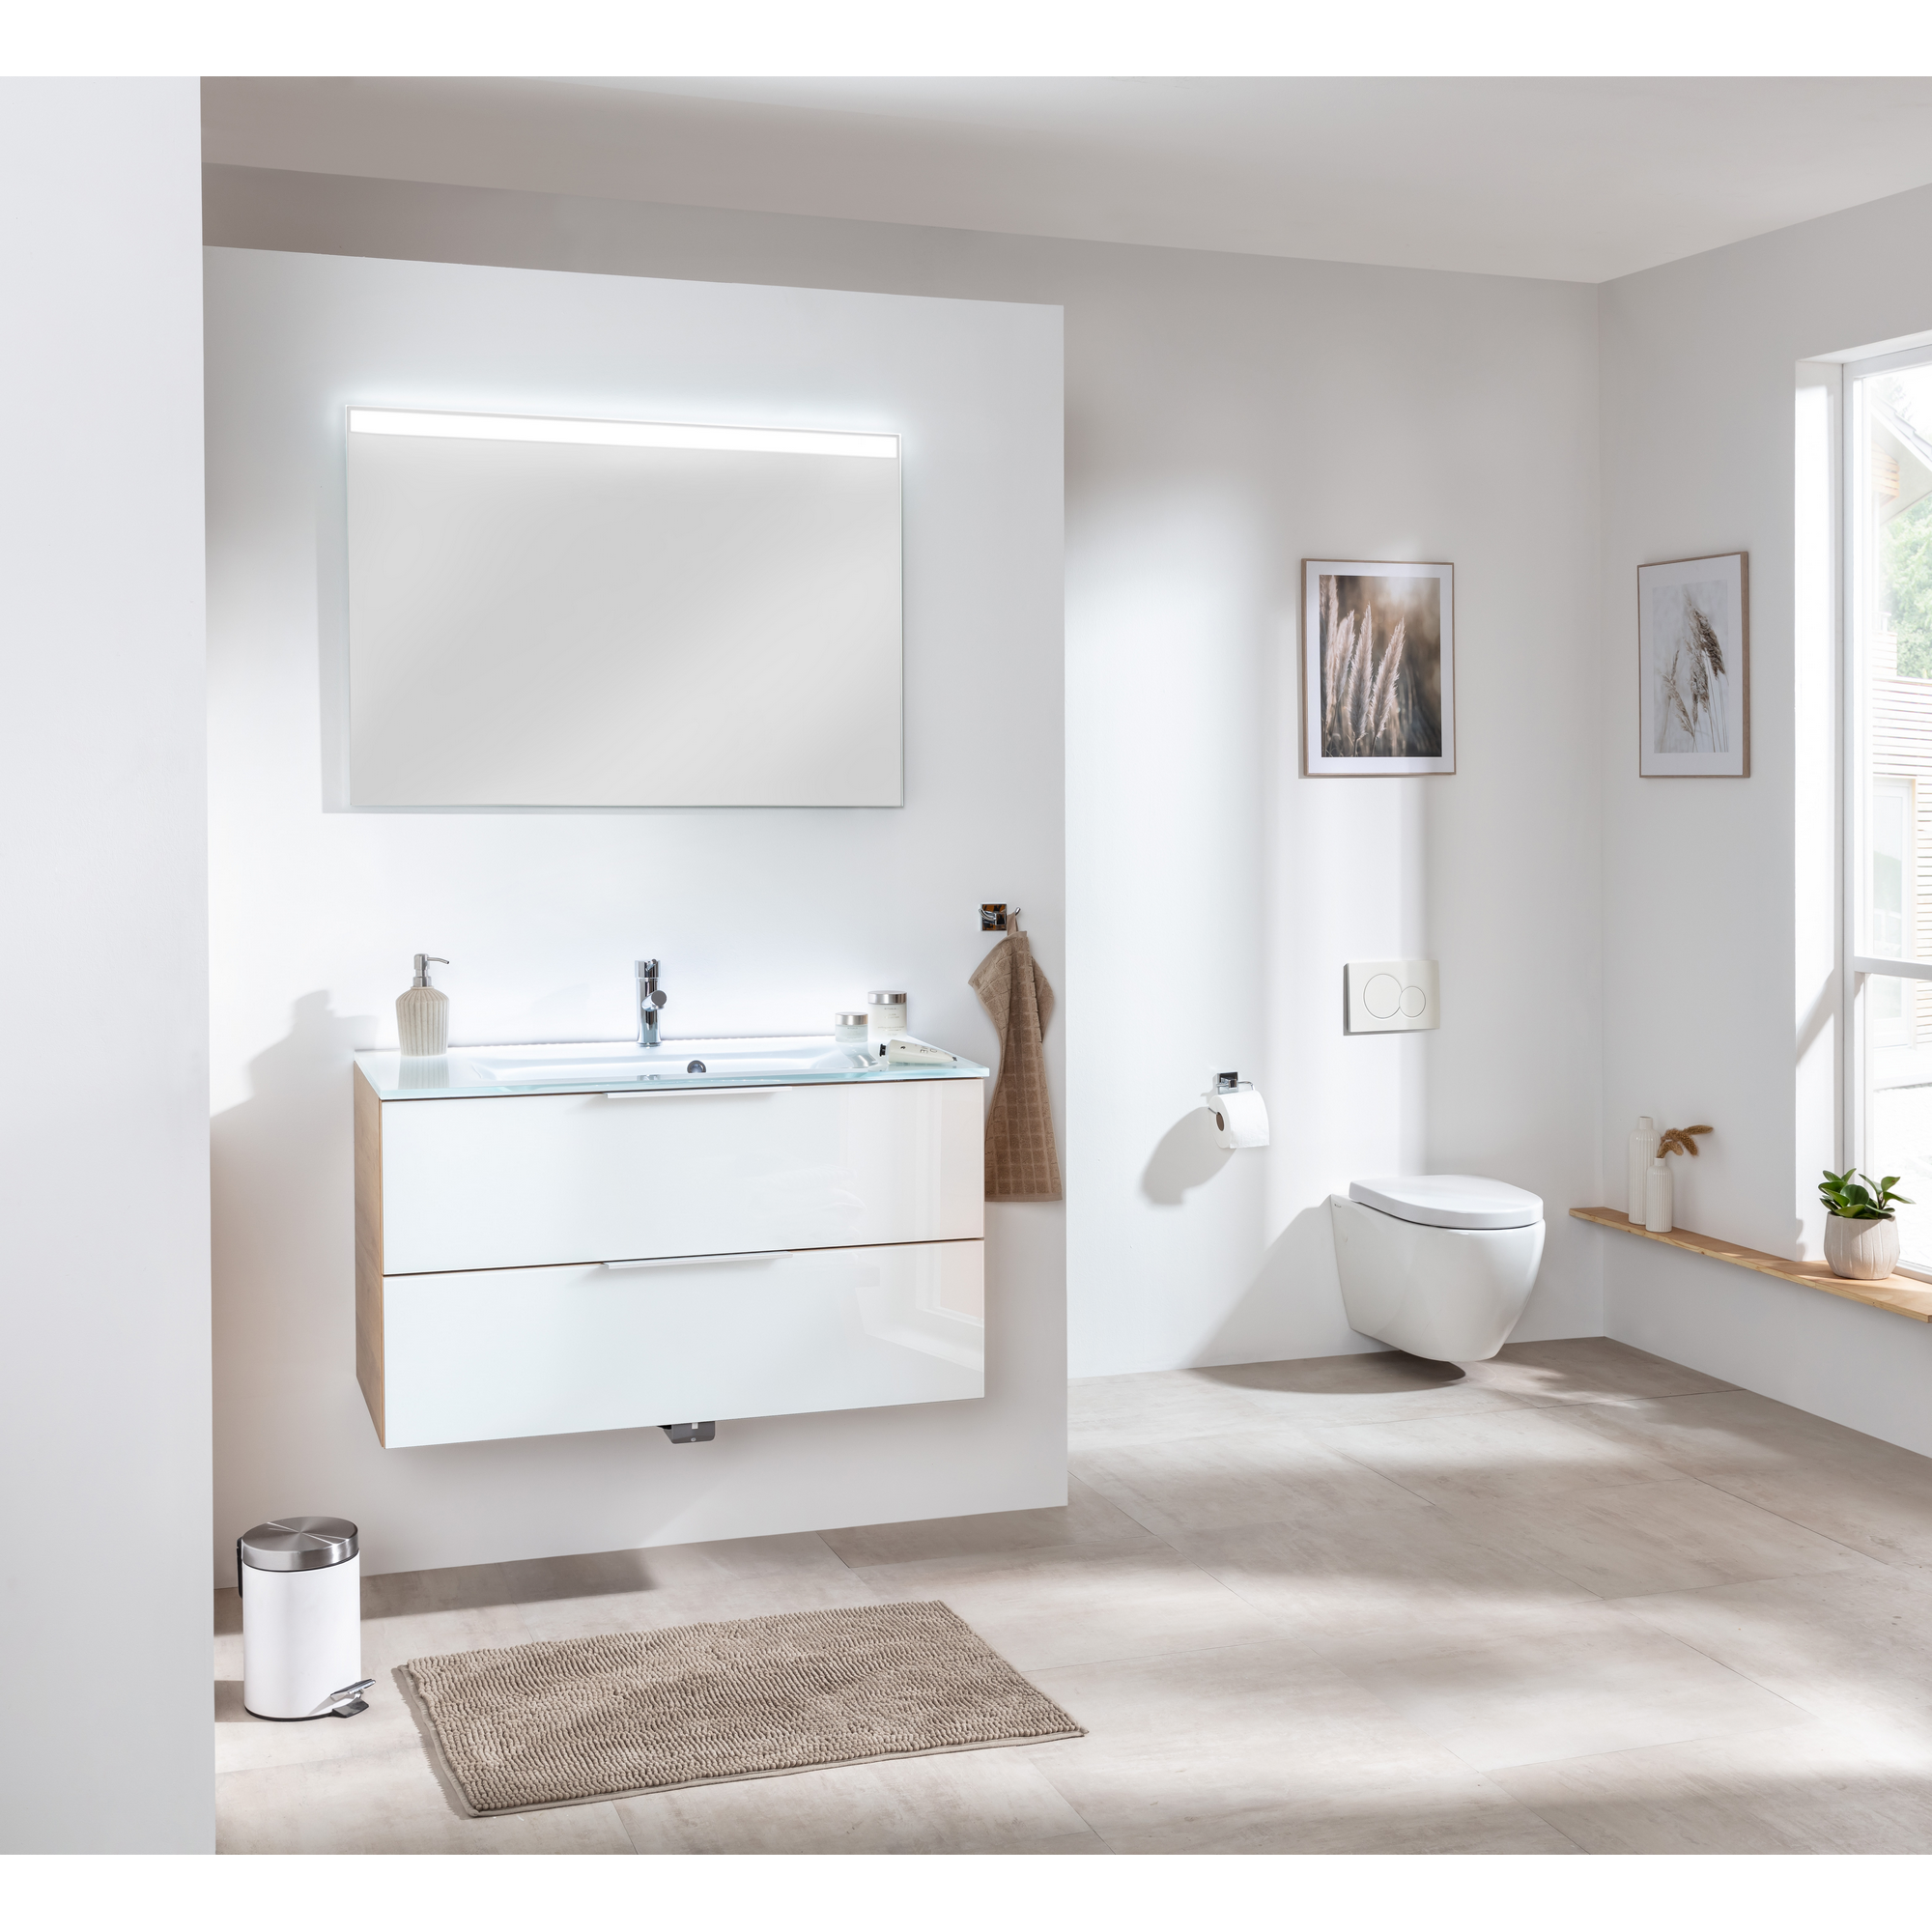 Waschbecken mit Unterschrank 'B.Brillant' Asteiche/weiß 100 x 56 x 50 cm + product picture